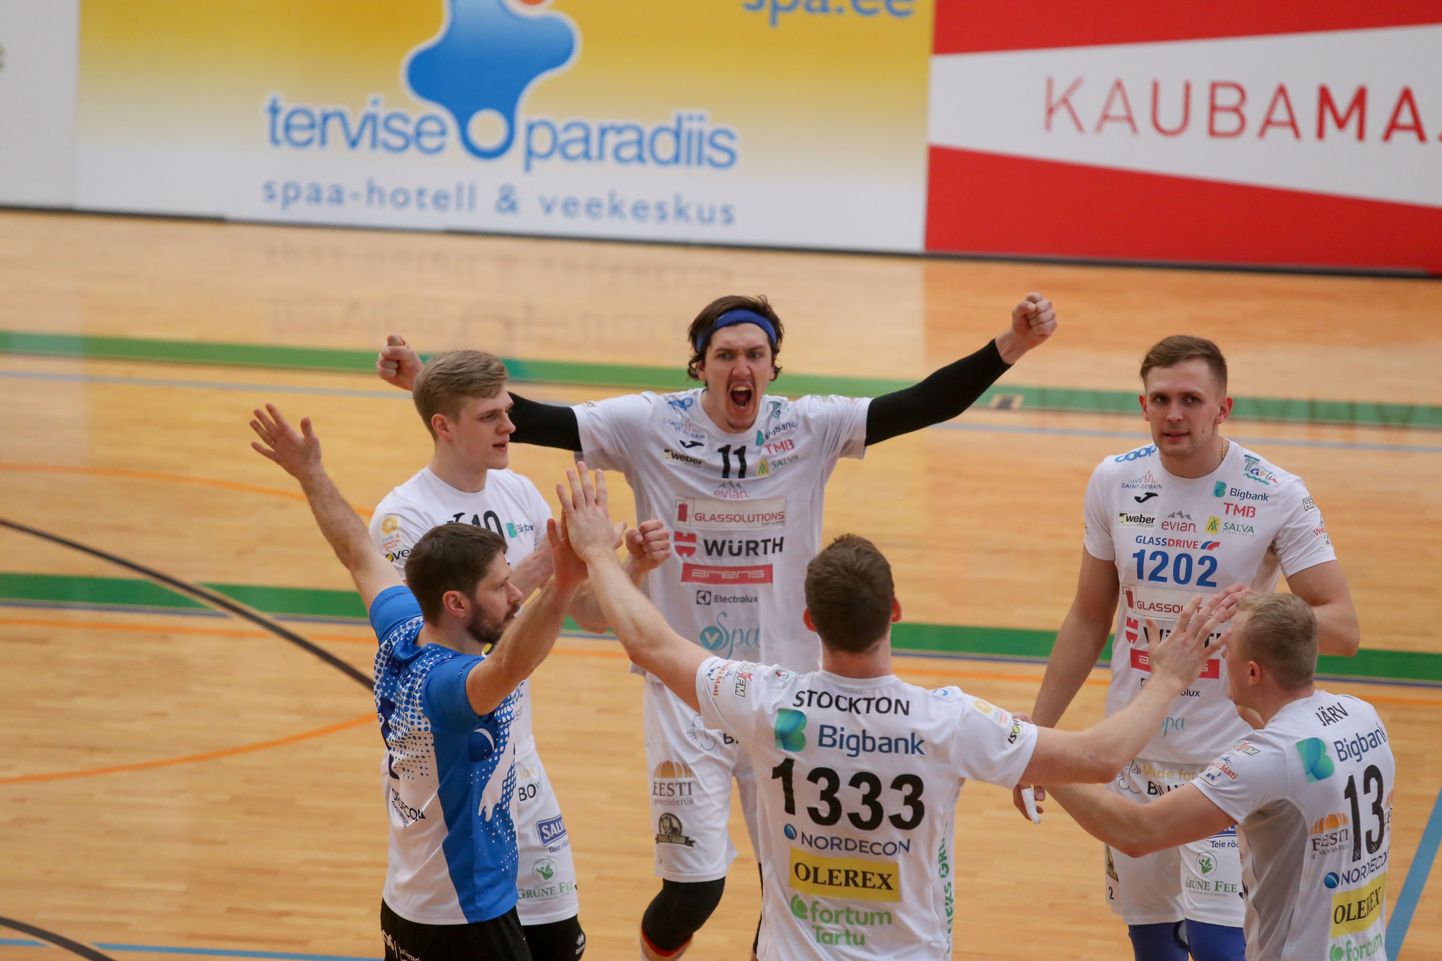 Tartu alistas poolfinaalis Pärnu mängudega 3:0 ja kohtub finaalis põhiturniiri võitja Saaremaaga.